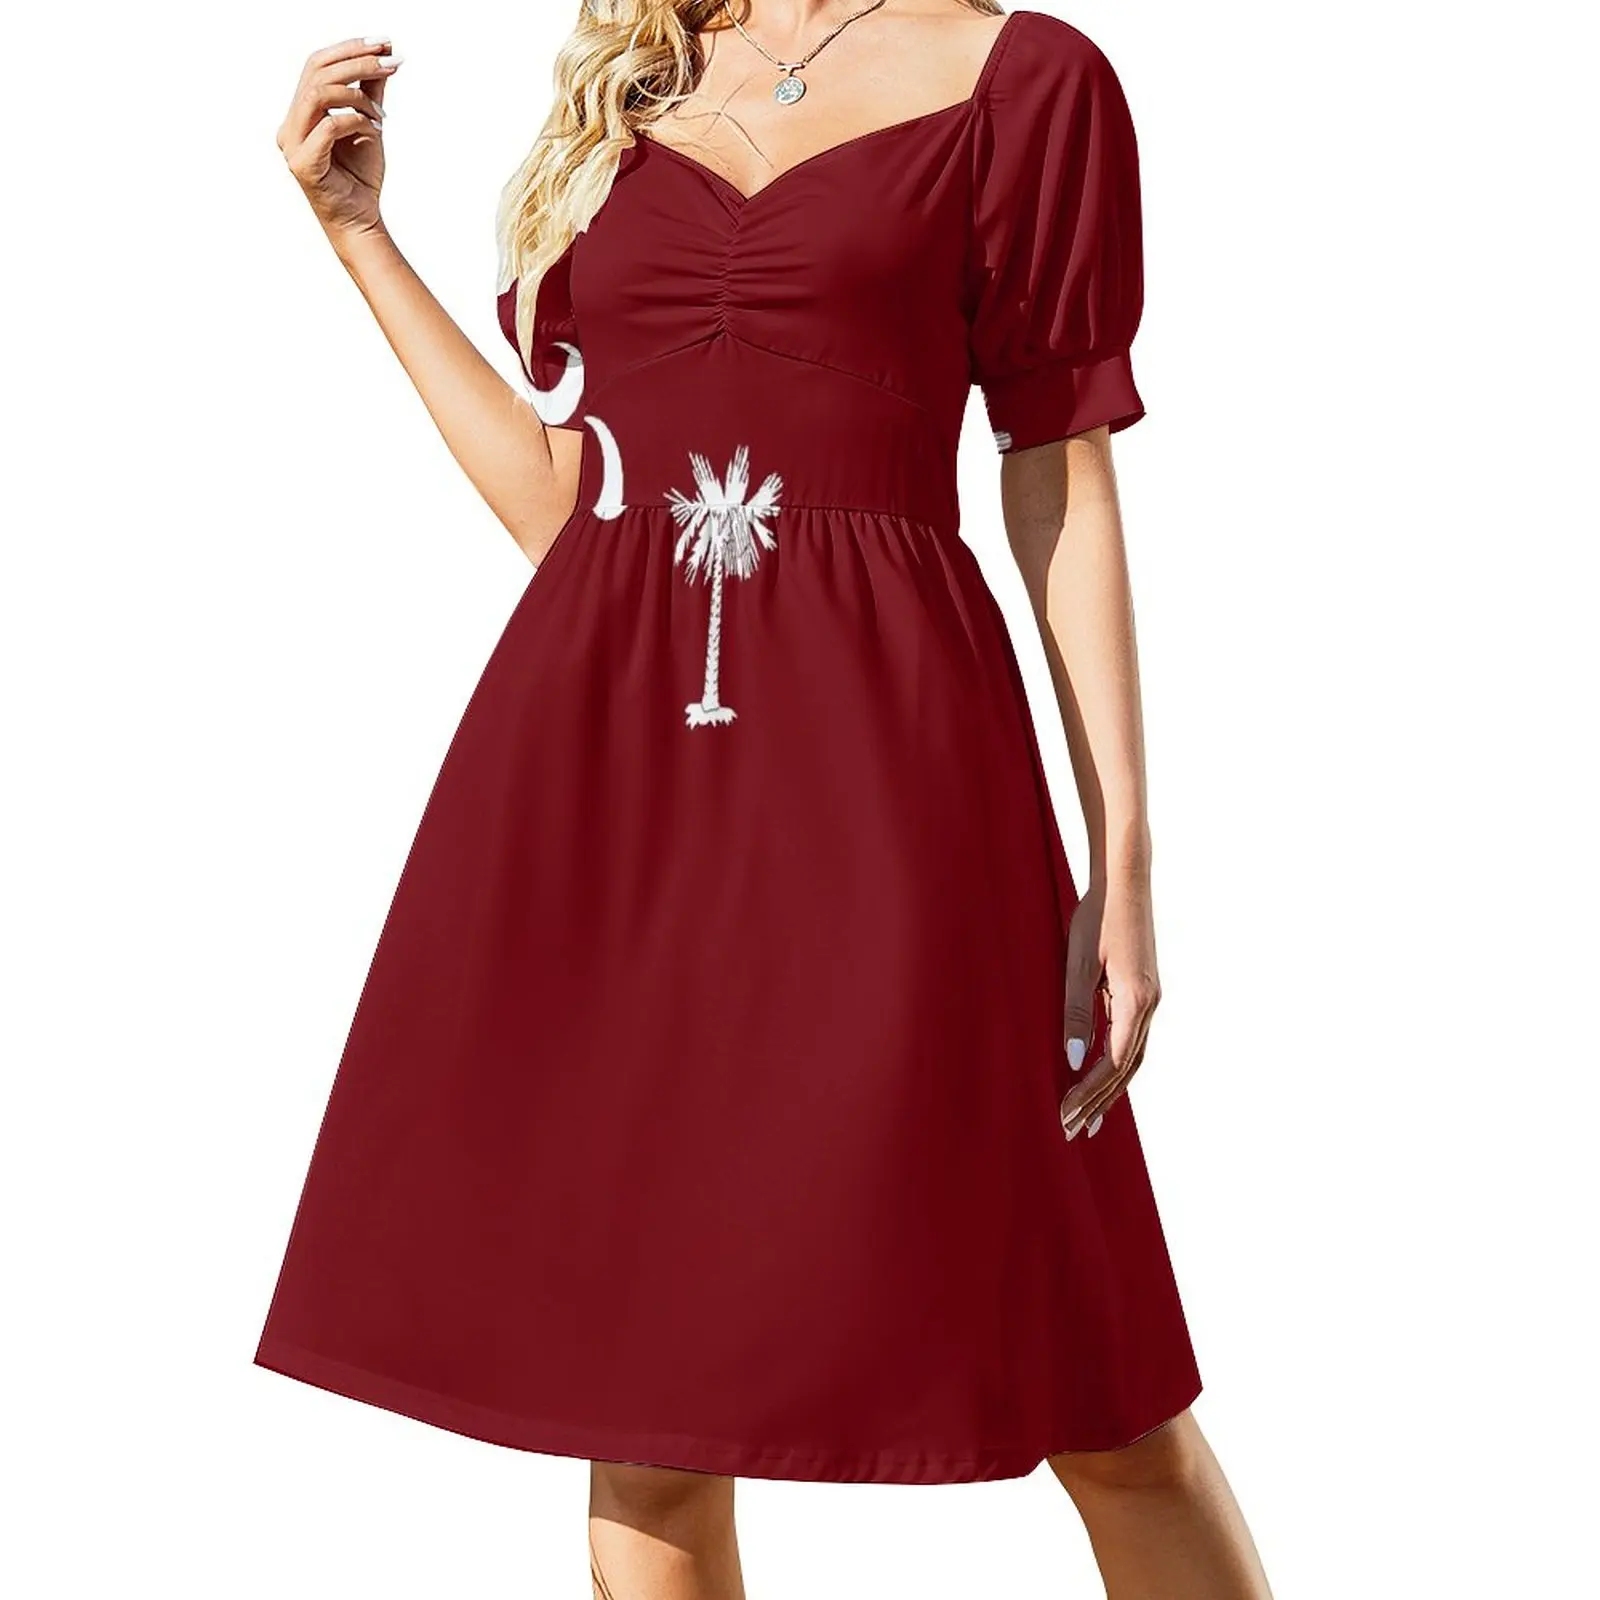 

Flag of South Carolina - Garnet Sleeveless Dress Long dress woman long dress women summer cute dress